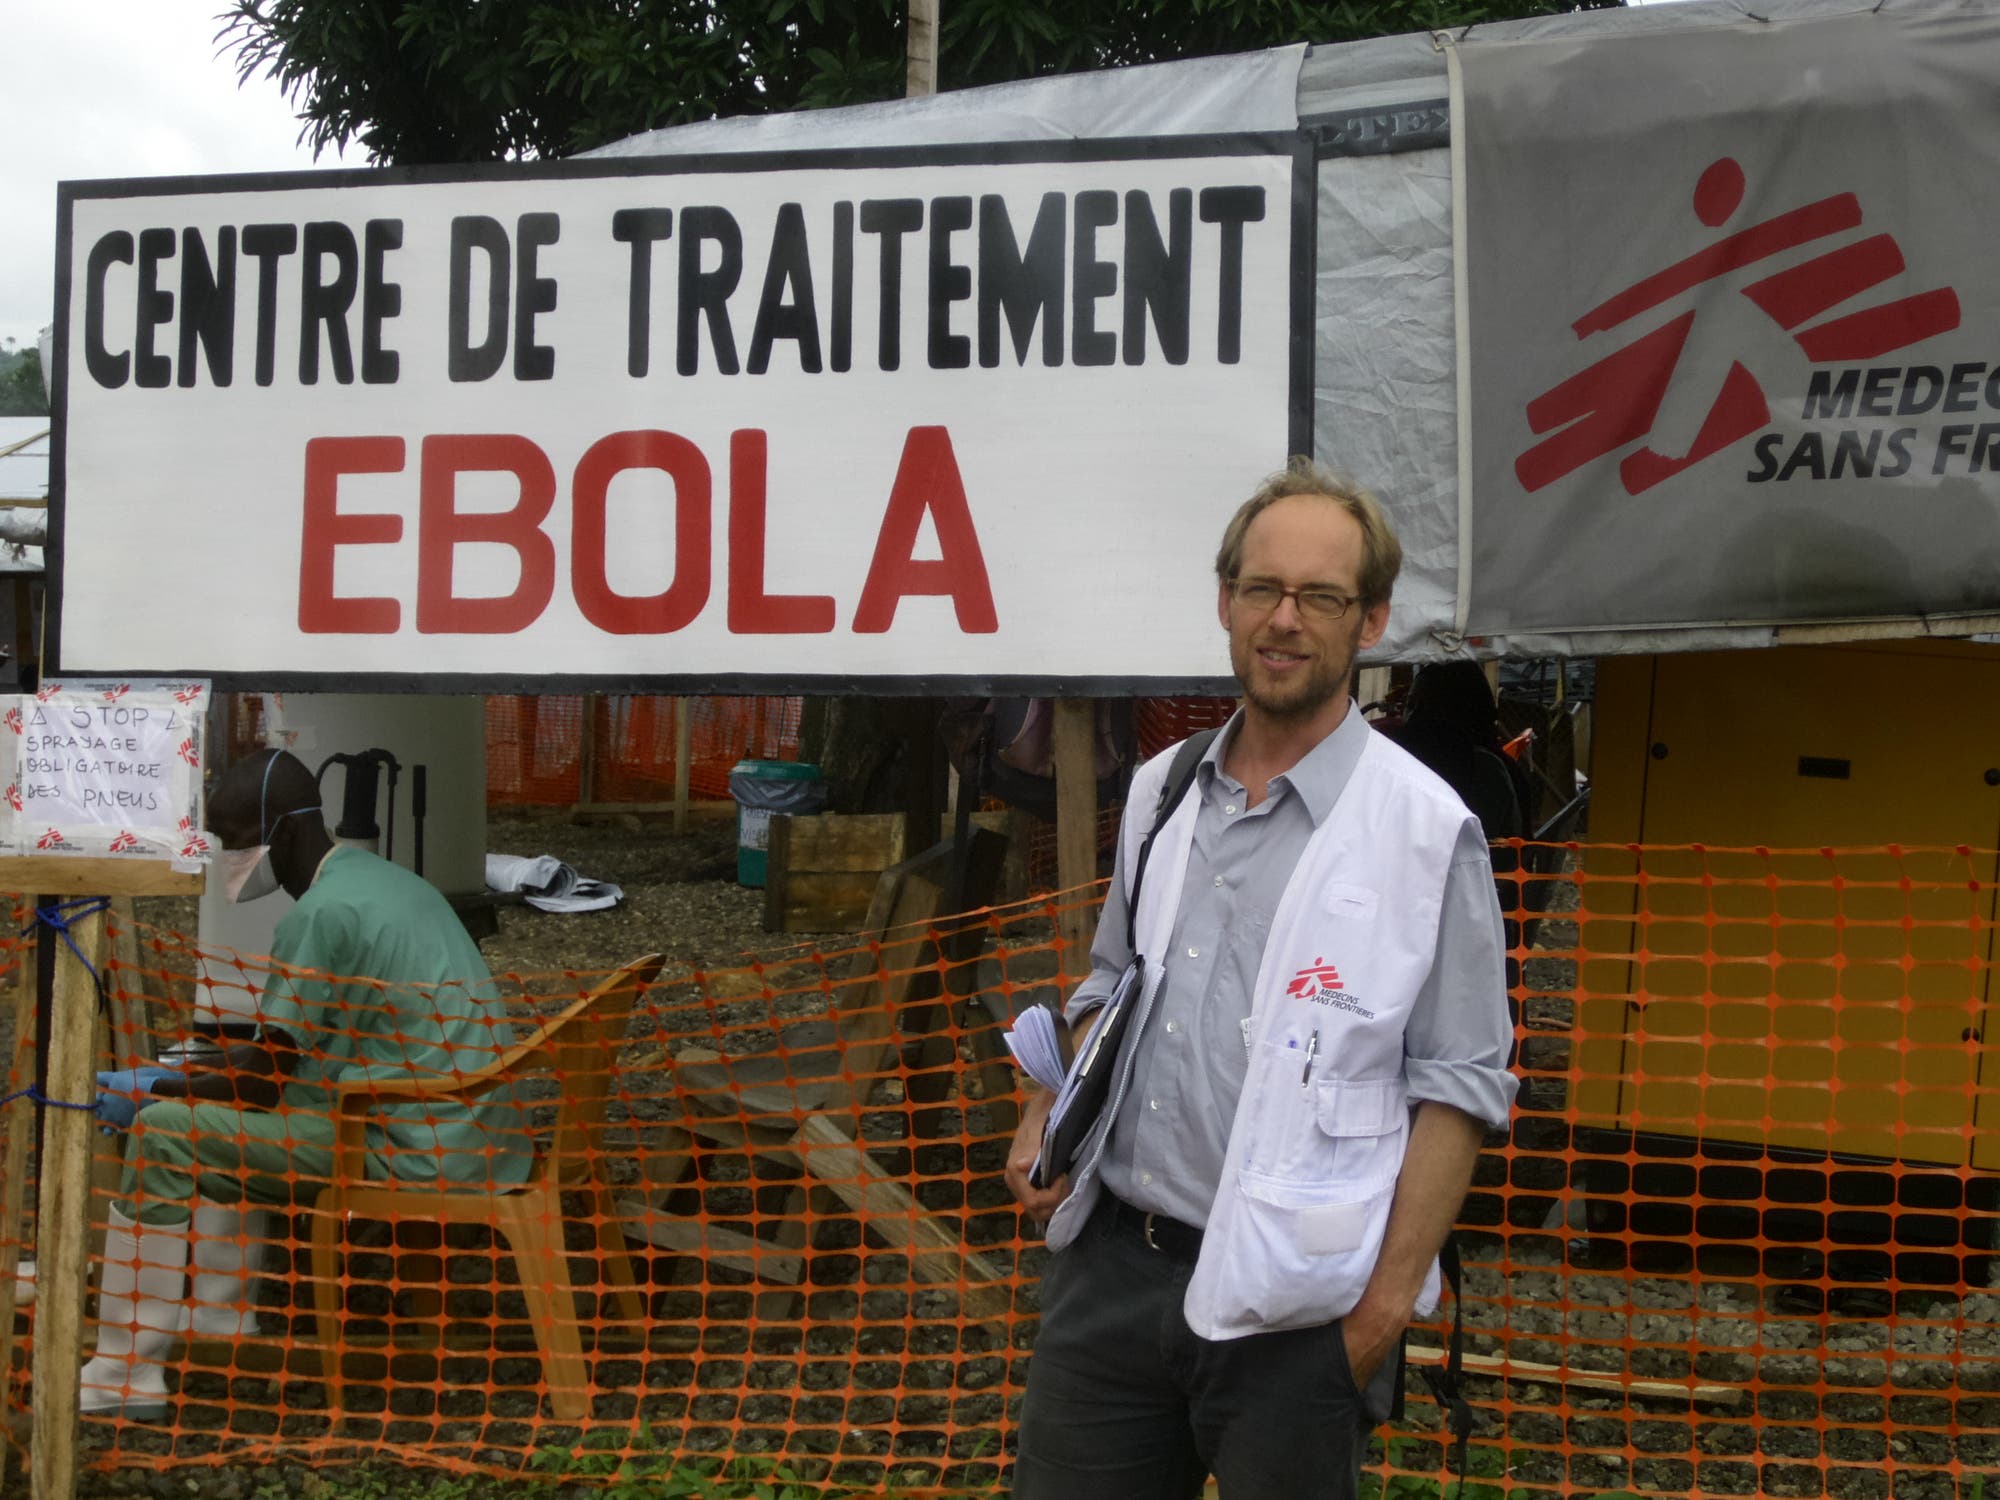 Ebola-Bekämpfung durch "Ärzte ohne Grenzen"